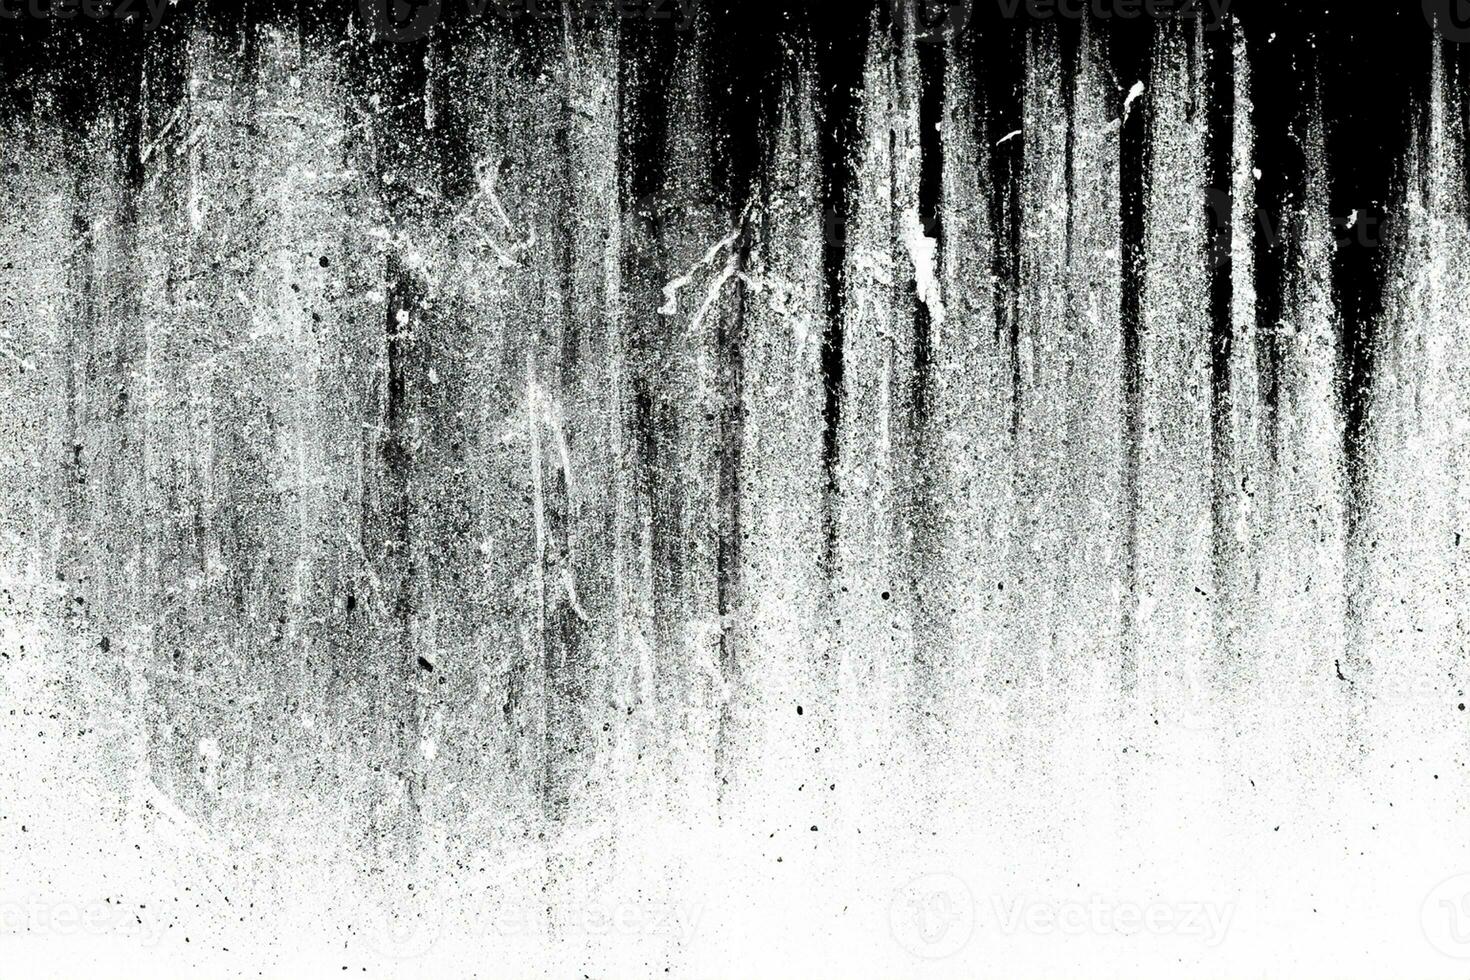 gammal åldrig riden grov smutsig betong spricka vägg textur. svart och vit yta med grunge damm ljud spannmål effekt abstrakt för bakgrund. foto